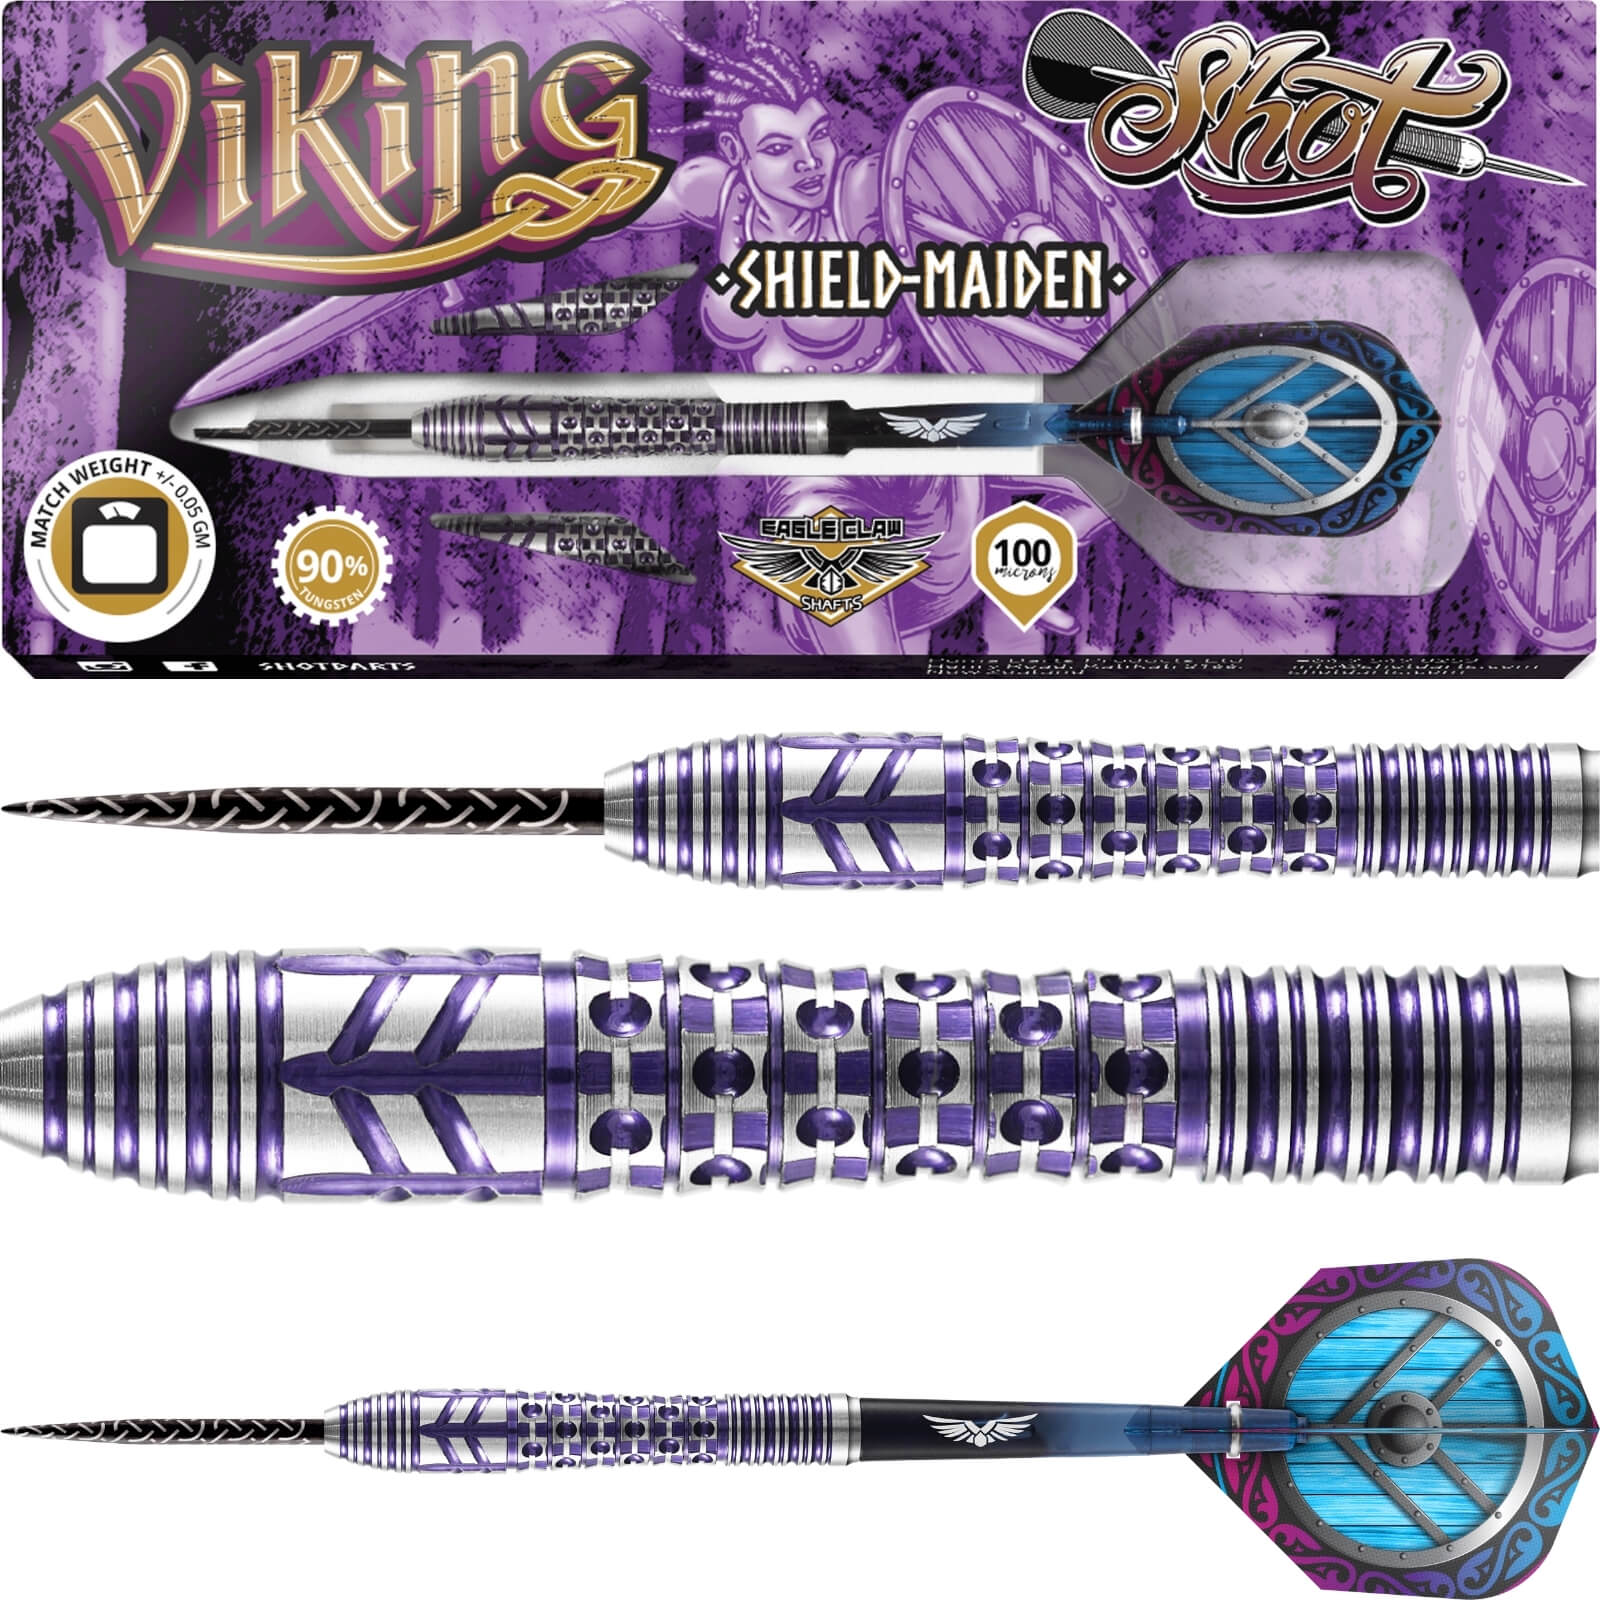 Darts - Shot - Viking Shield-Maiden Darts - Steel Tip - 90% Tungsten - 23g 24g 25g 27g 